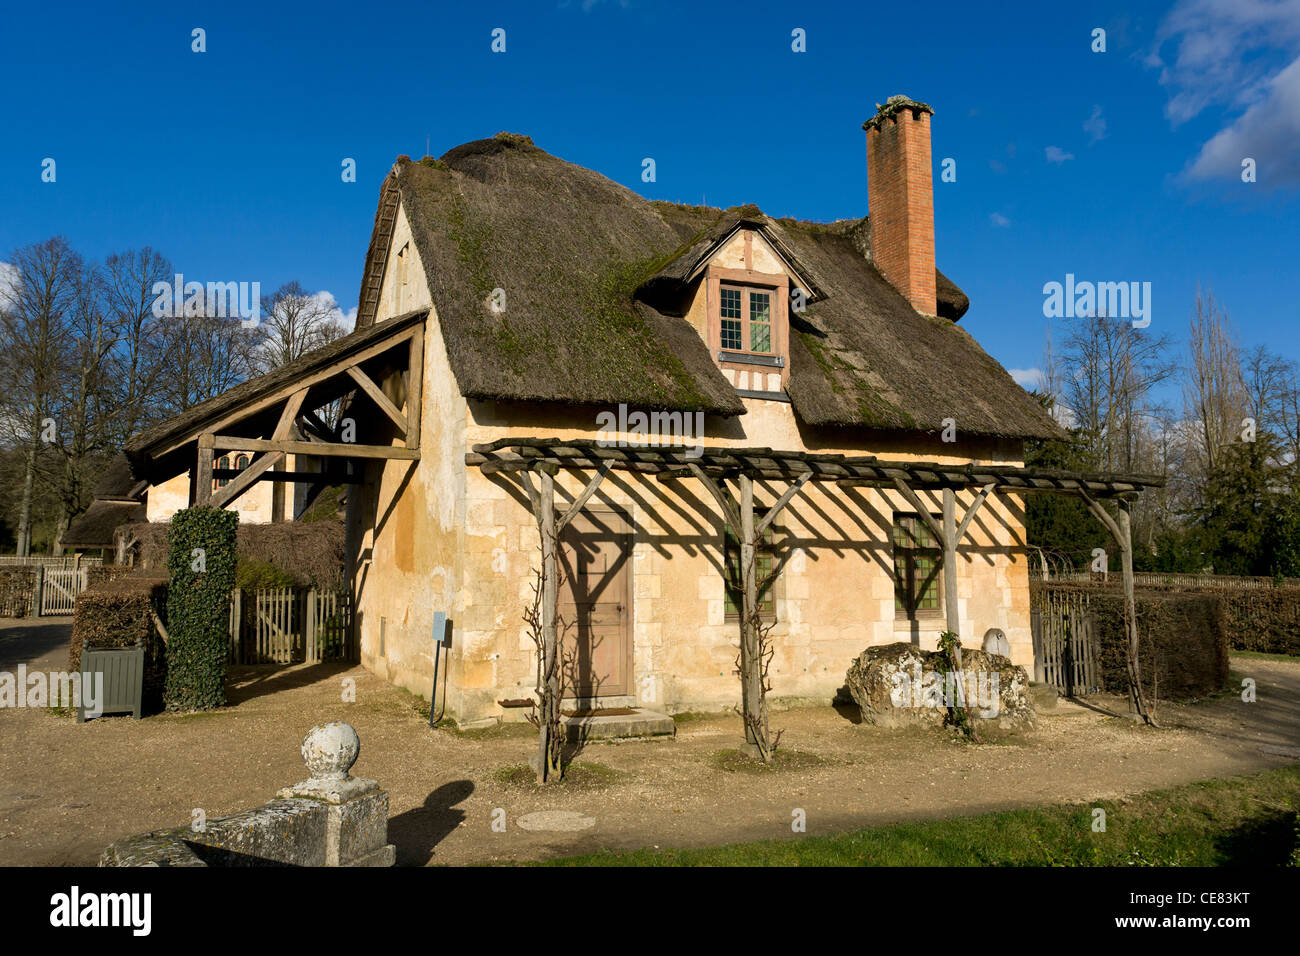 Le Colombier (dove/pigeon house), Hameau de la reine, Chateau de Versailles, France Stock Photo